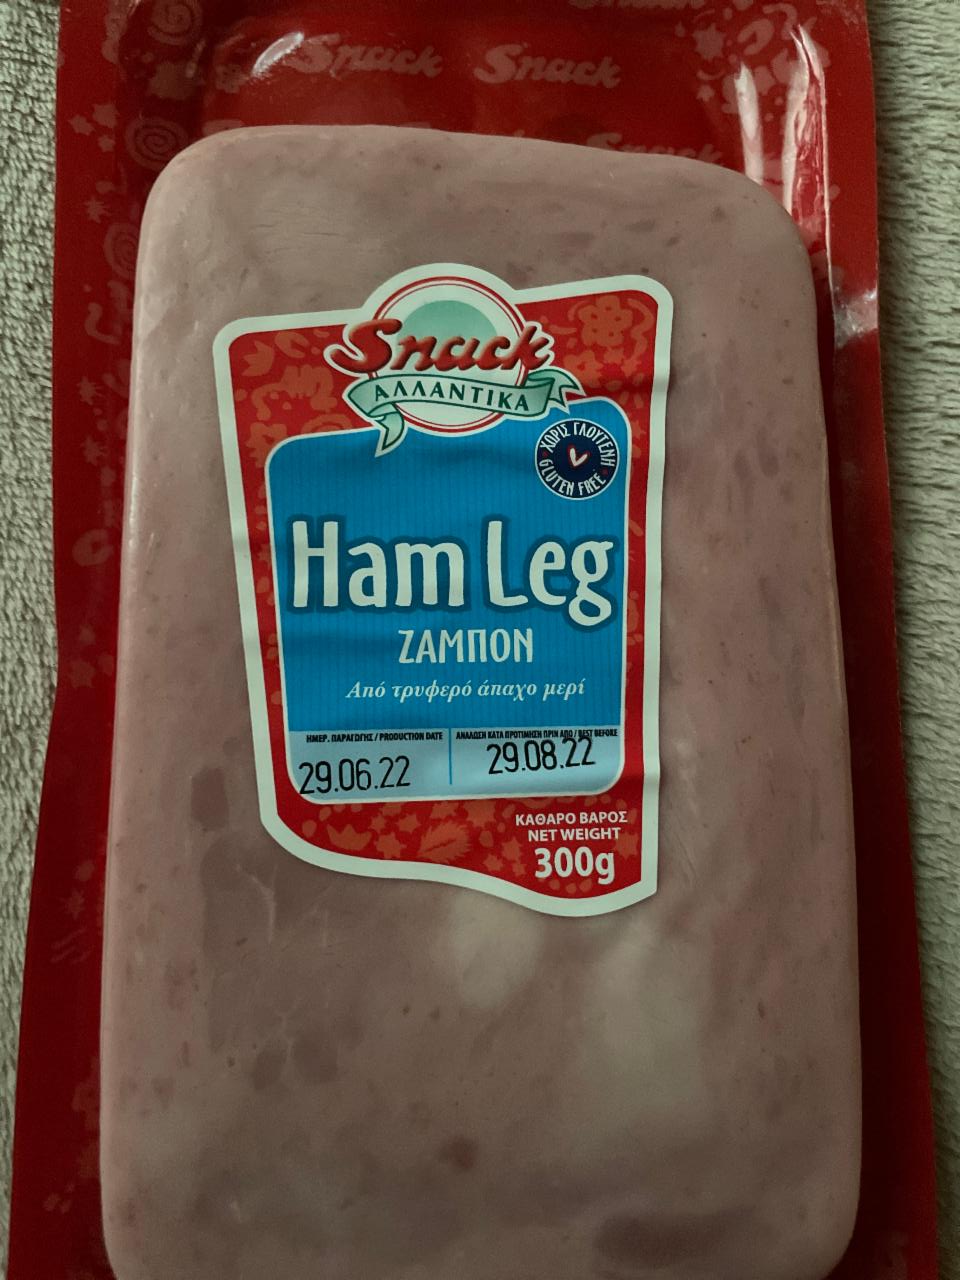 Fotografie - Snack Ham leg